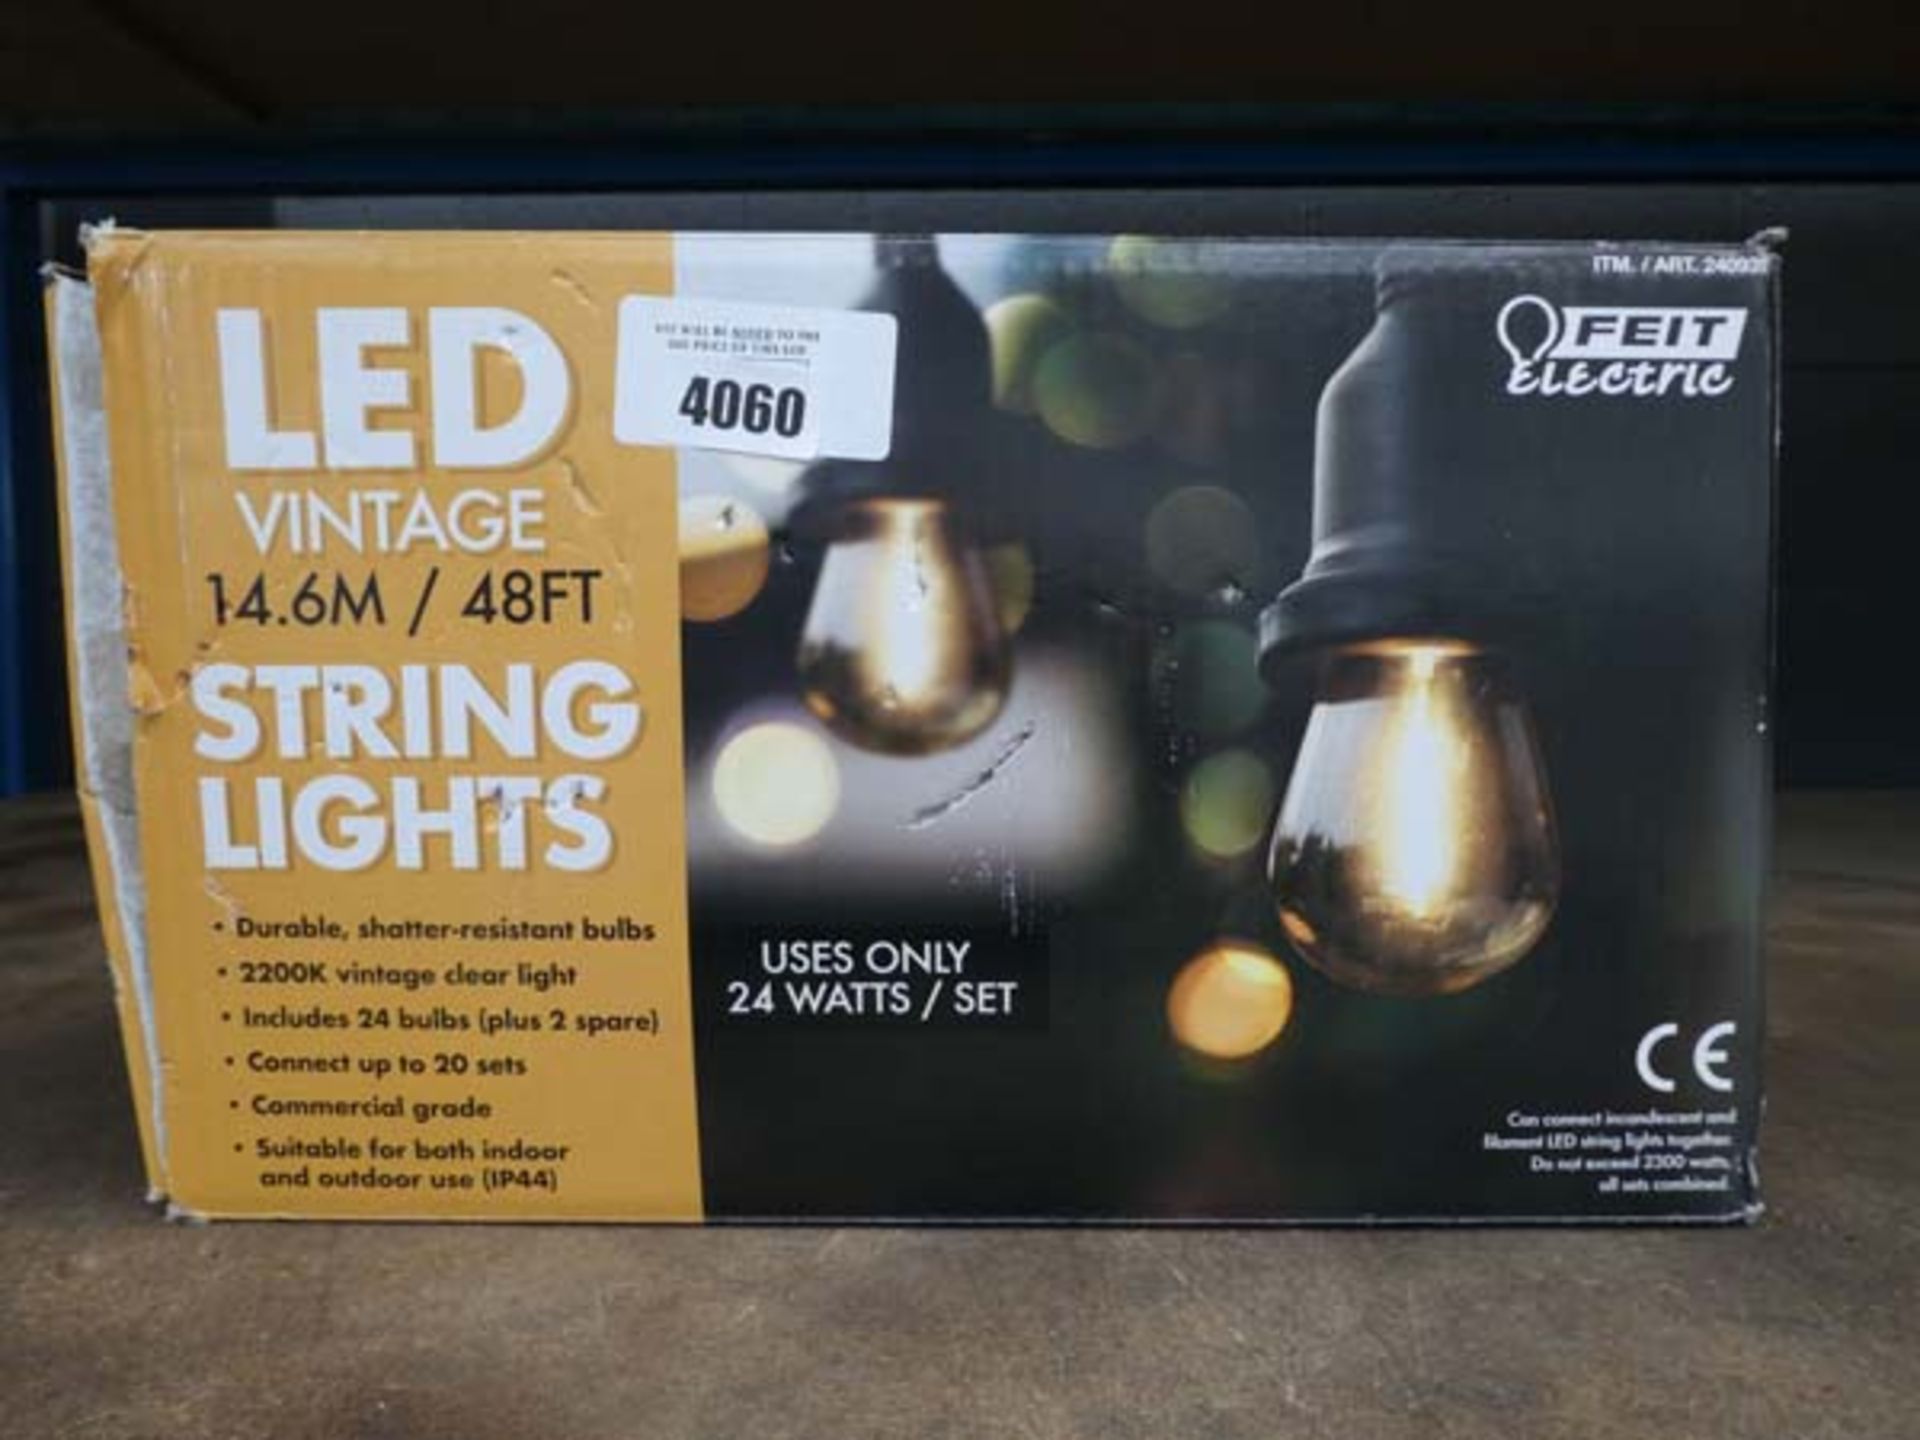 Box of LED vintage string lights